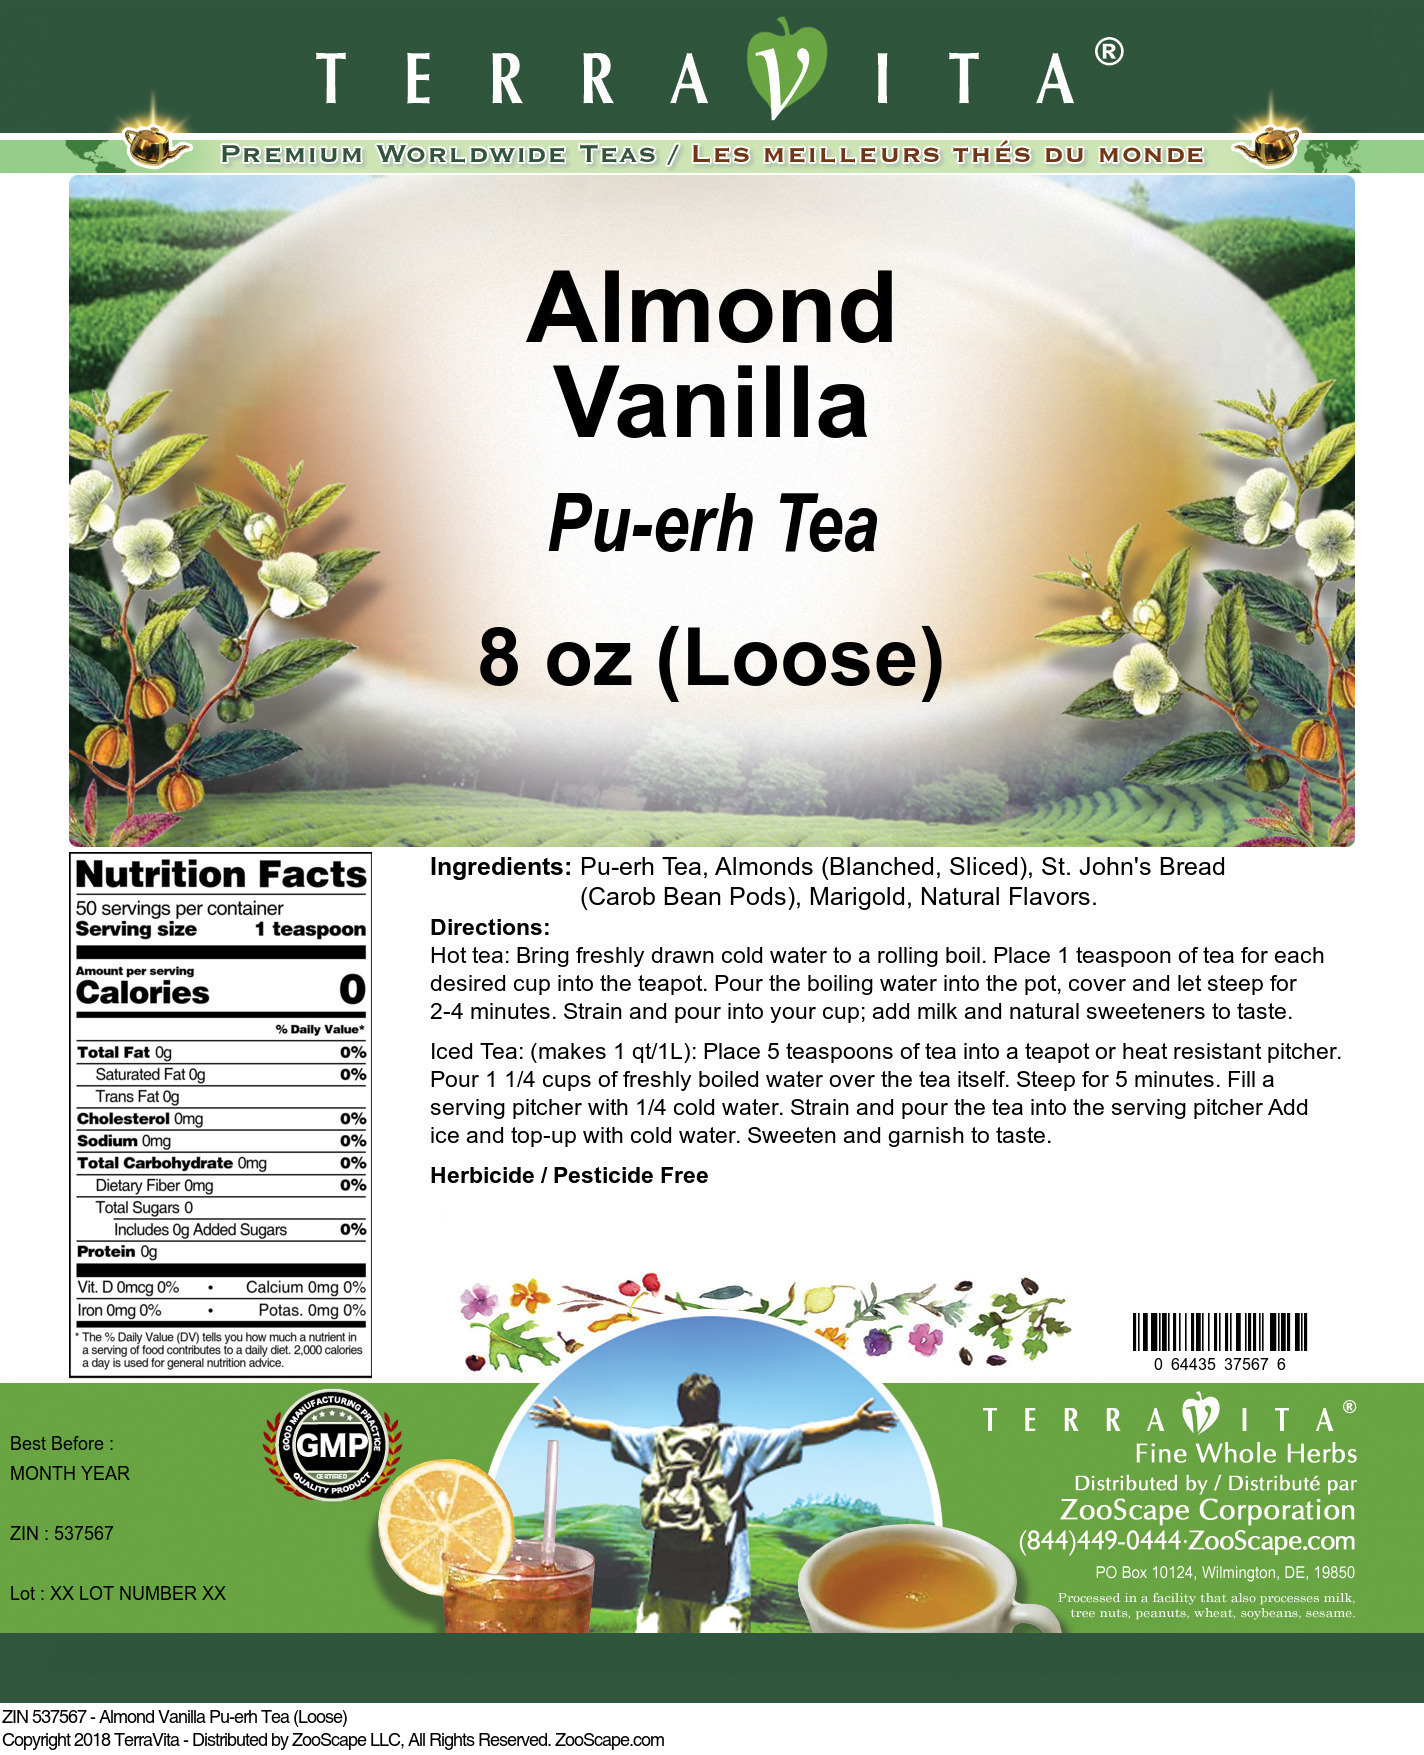 Almond Vanilla Pu-erh Tea (Loose) - Label